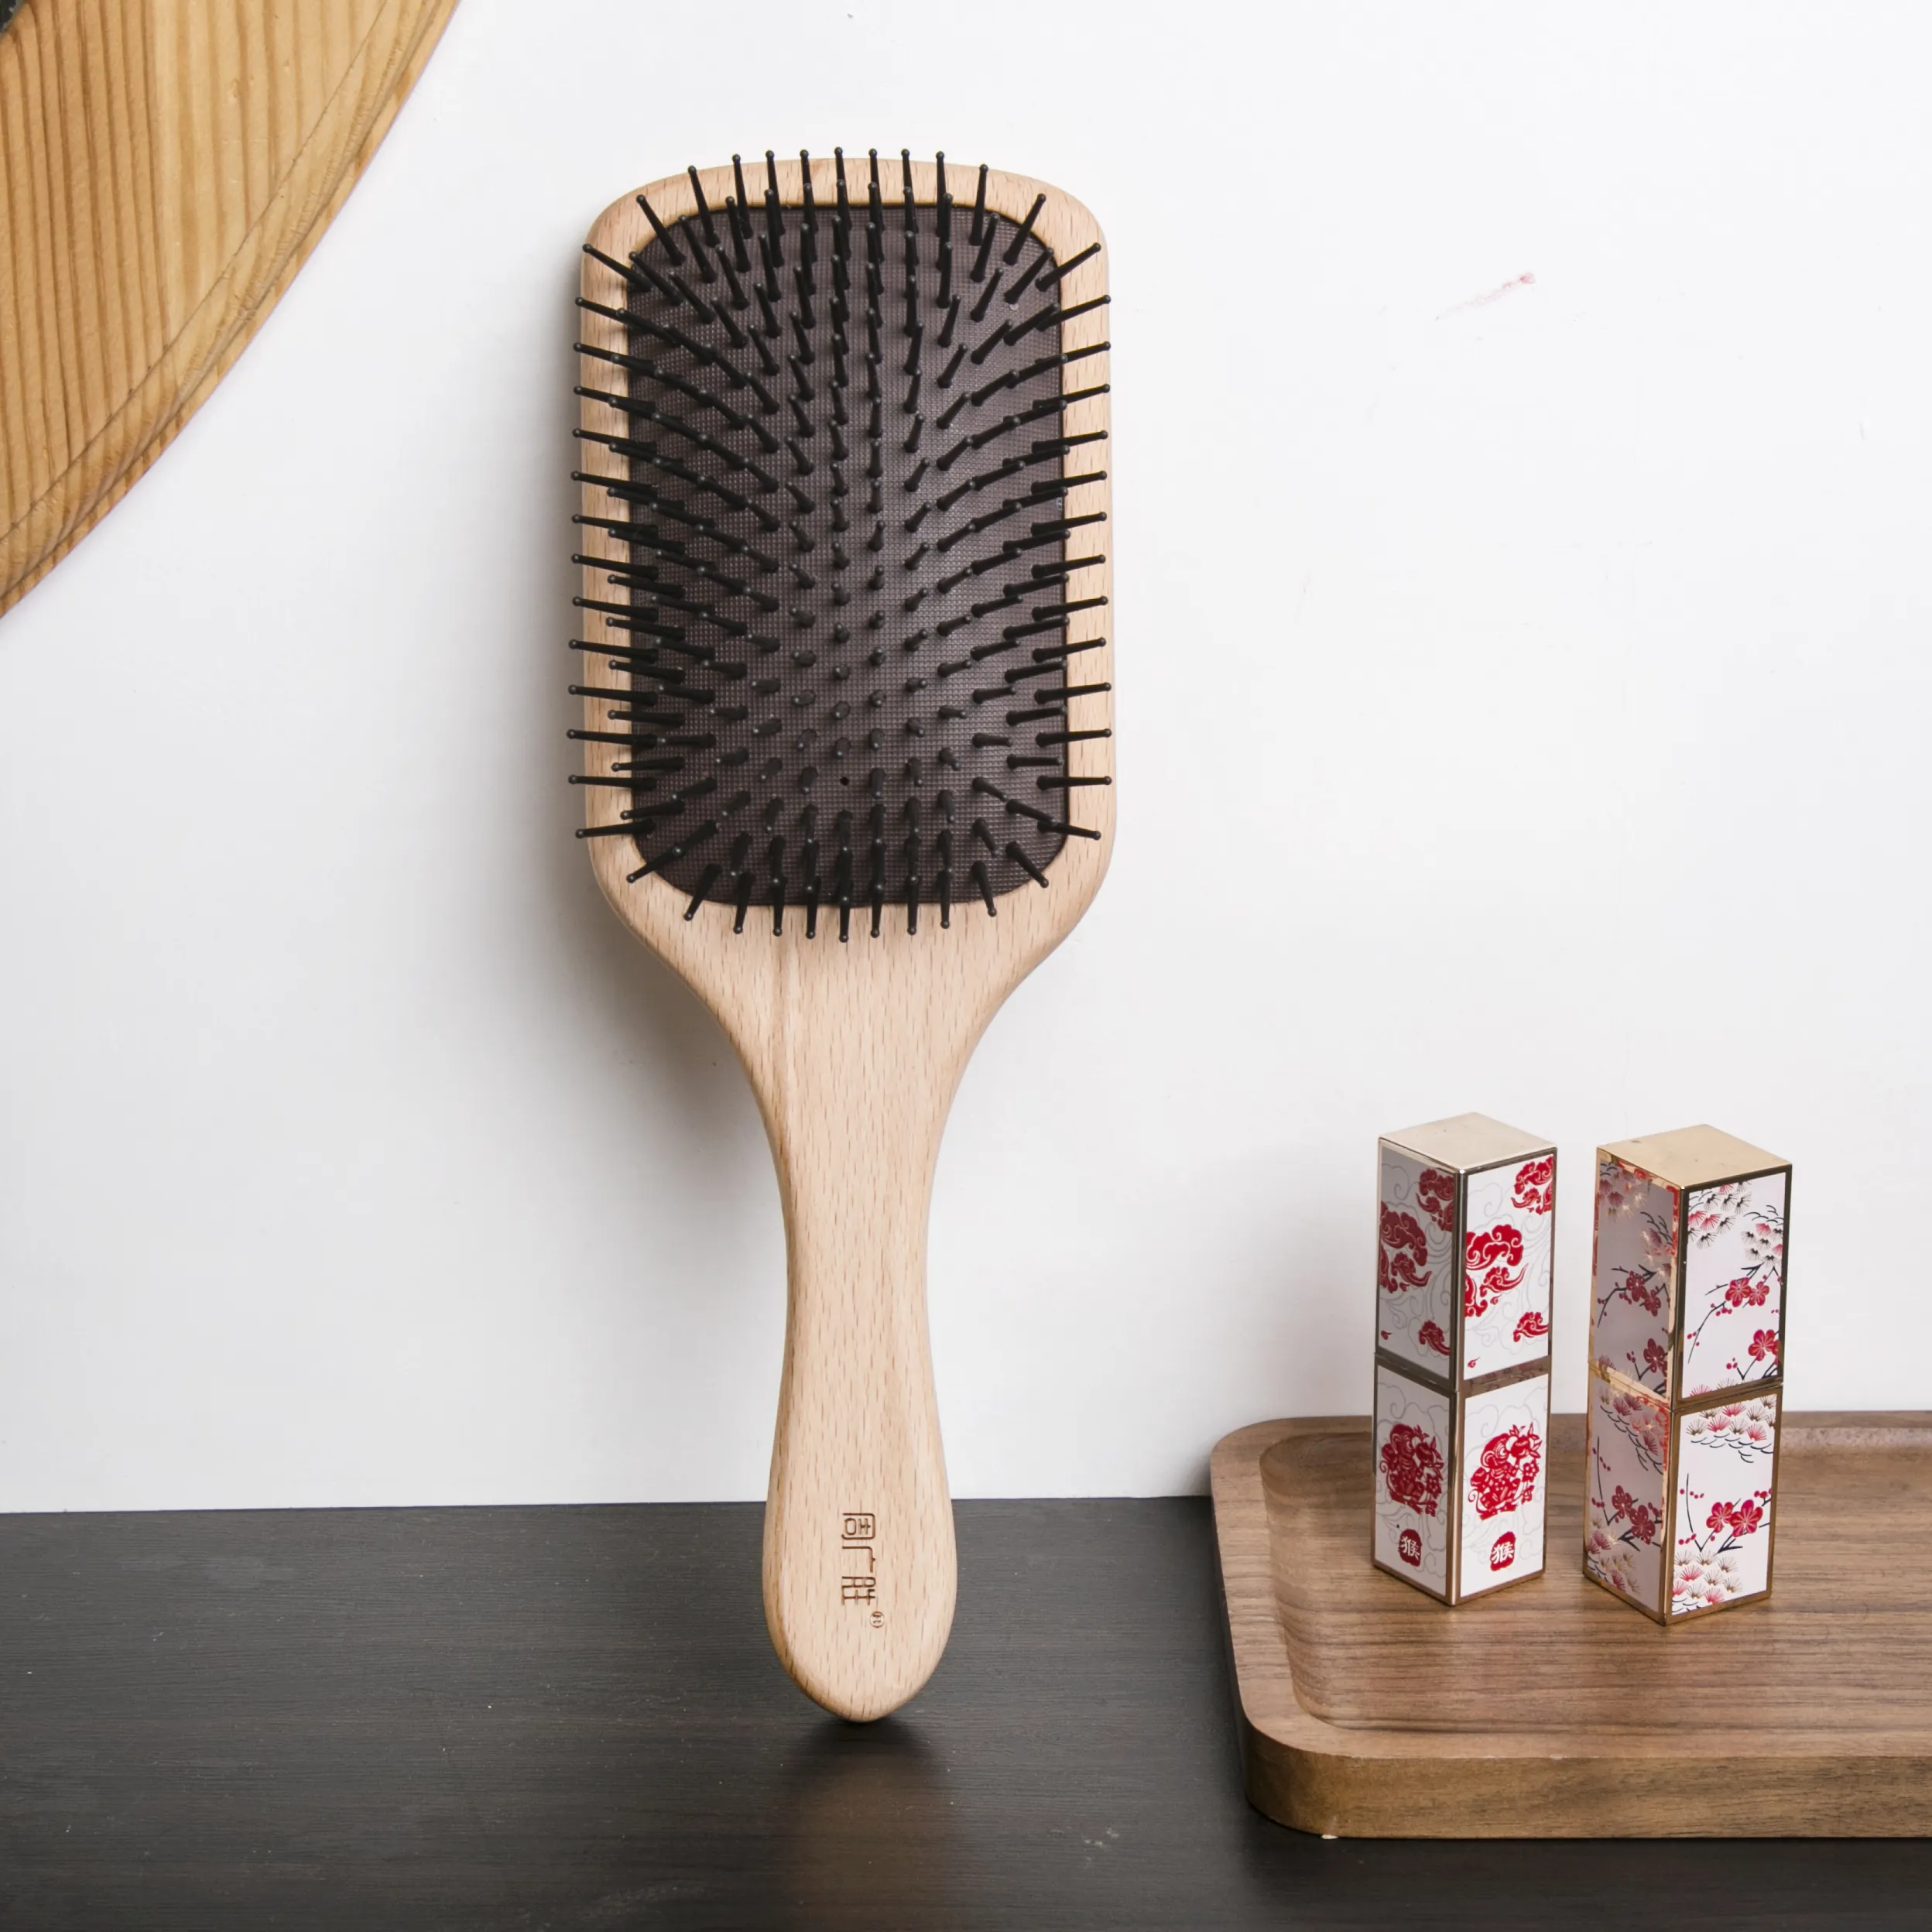 Kit de Peine y cepillo para Barba para hombre, herramienta para moldear el pelo, peine de madera, tallado, artesanía